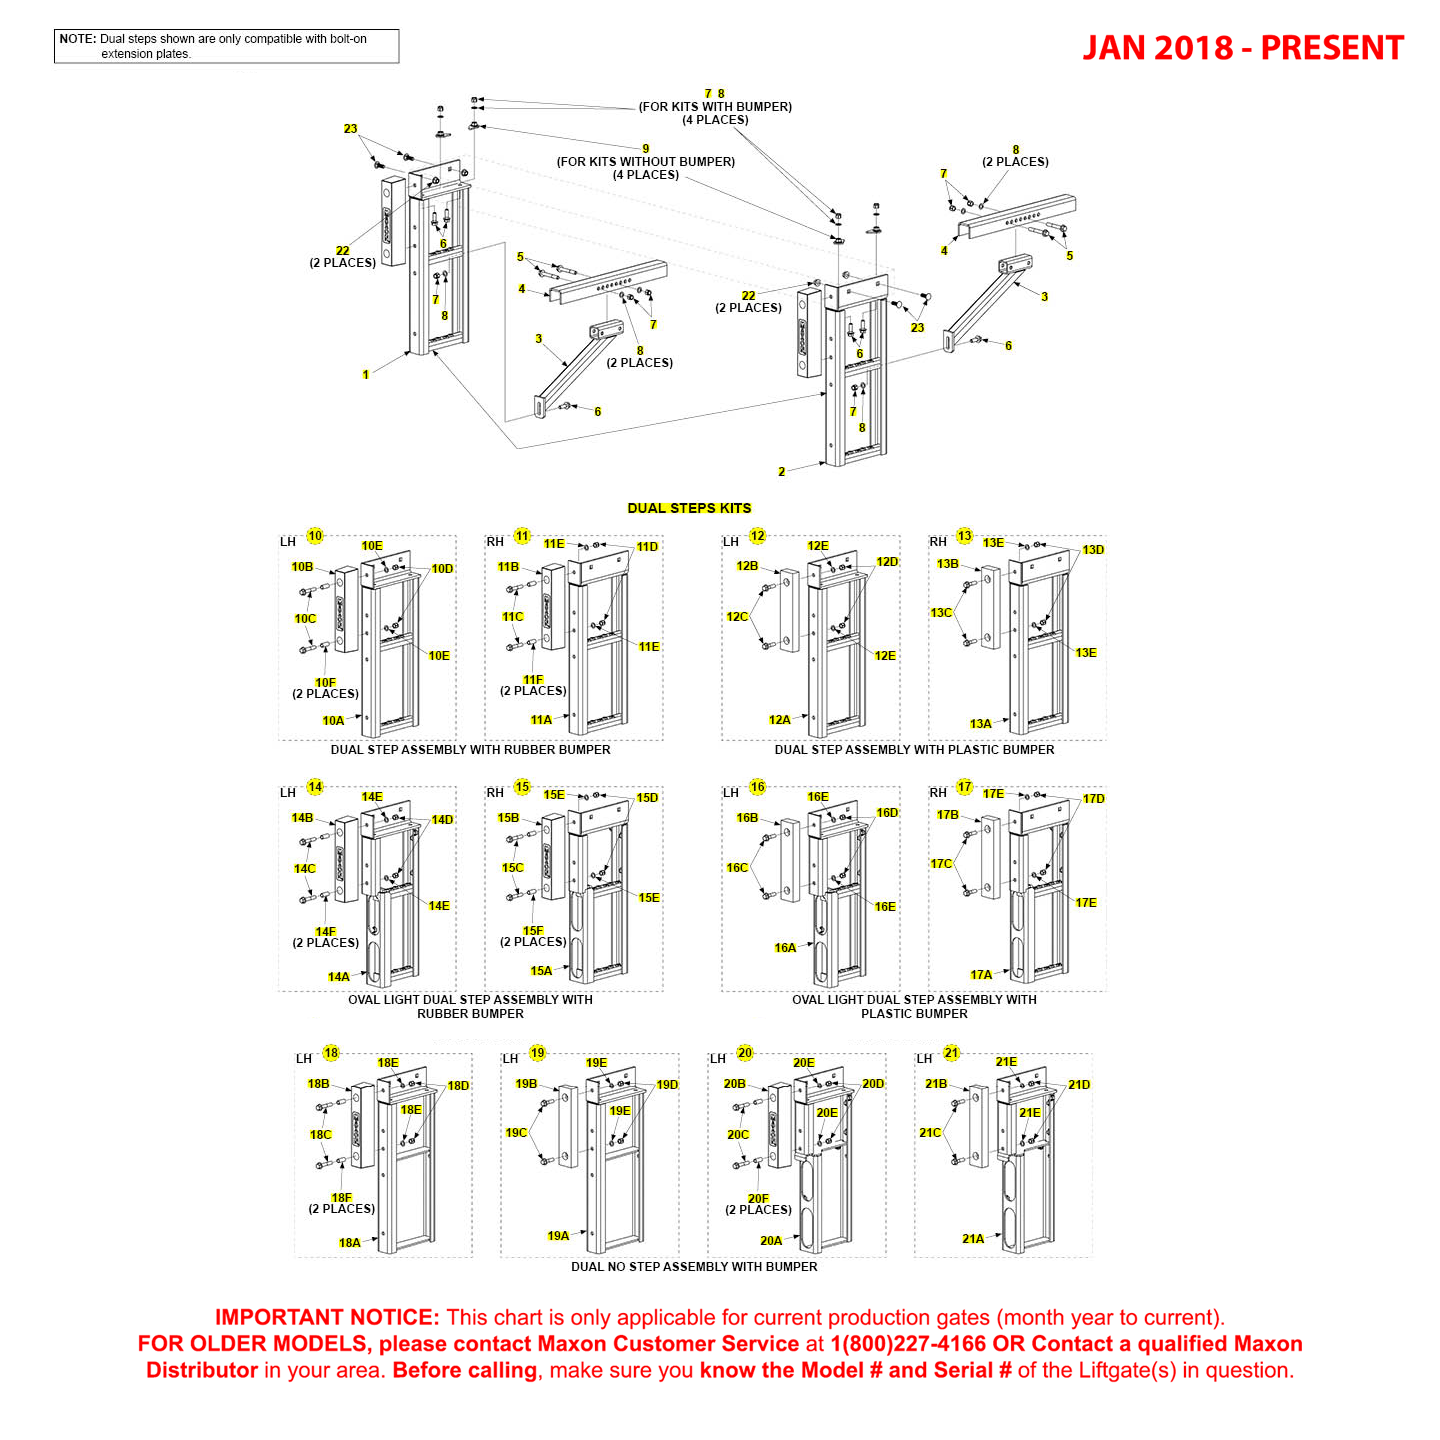 Maxon GPT (Jan 2018 - Present) Dual Step Kits Diagram